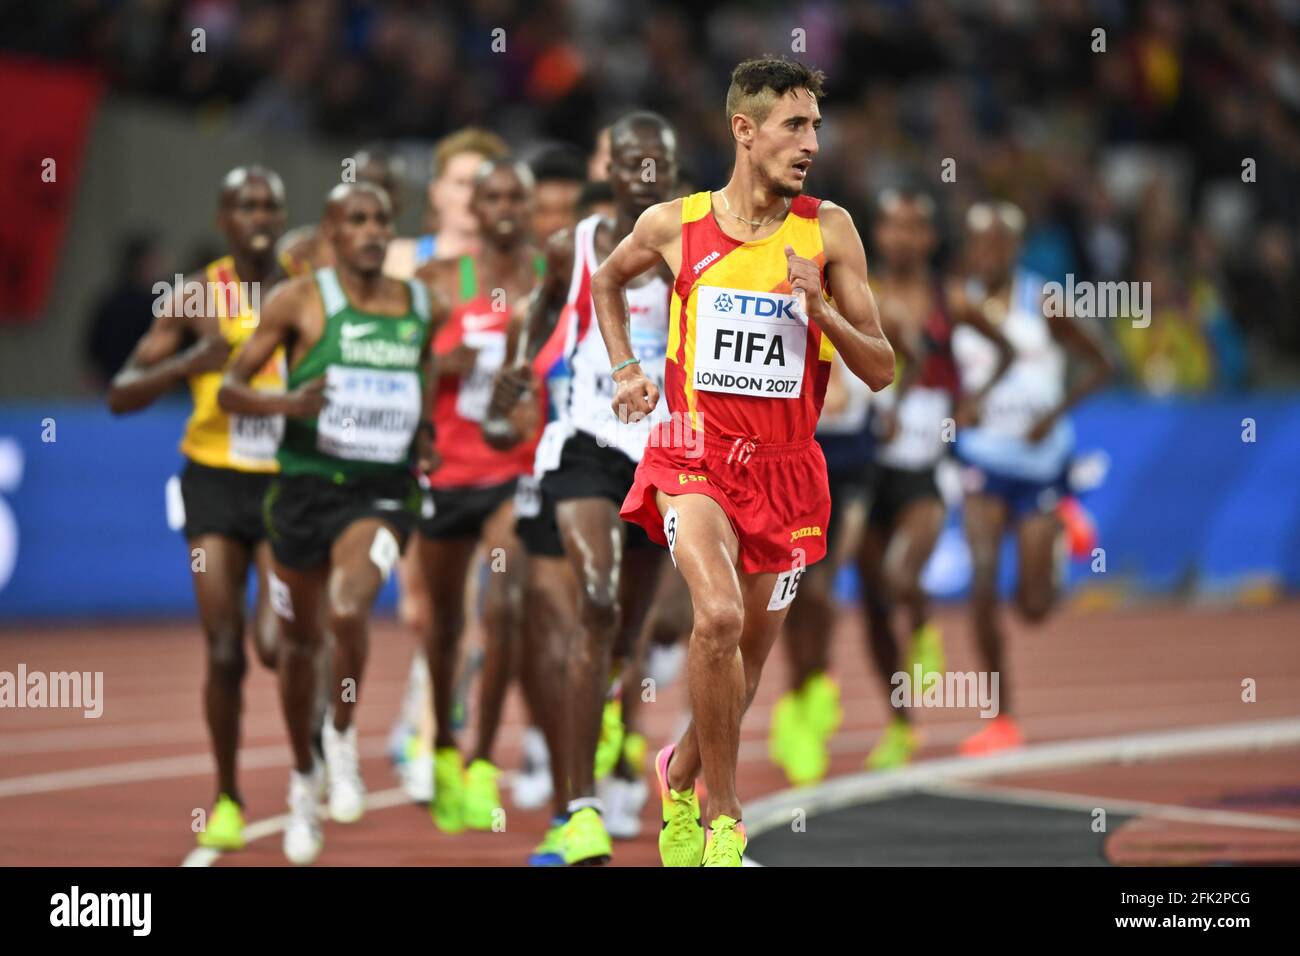 Illias Fifa (Espagne). 5000 mètres hommes, qualification. Championnats du monde de l'IAAF Londres 2017 Banque D'Images